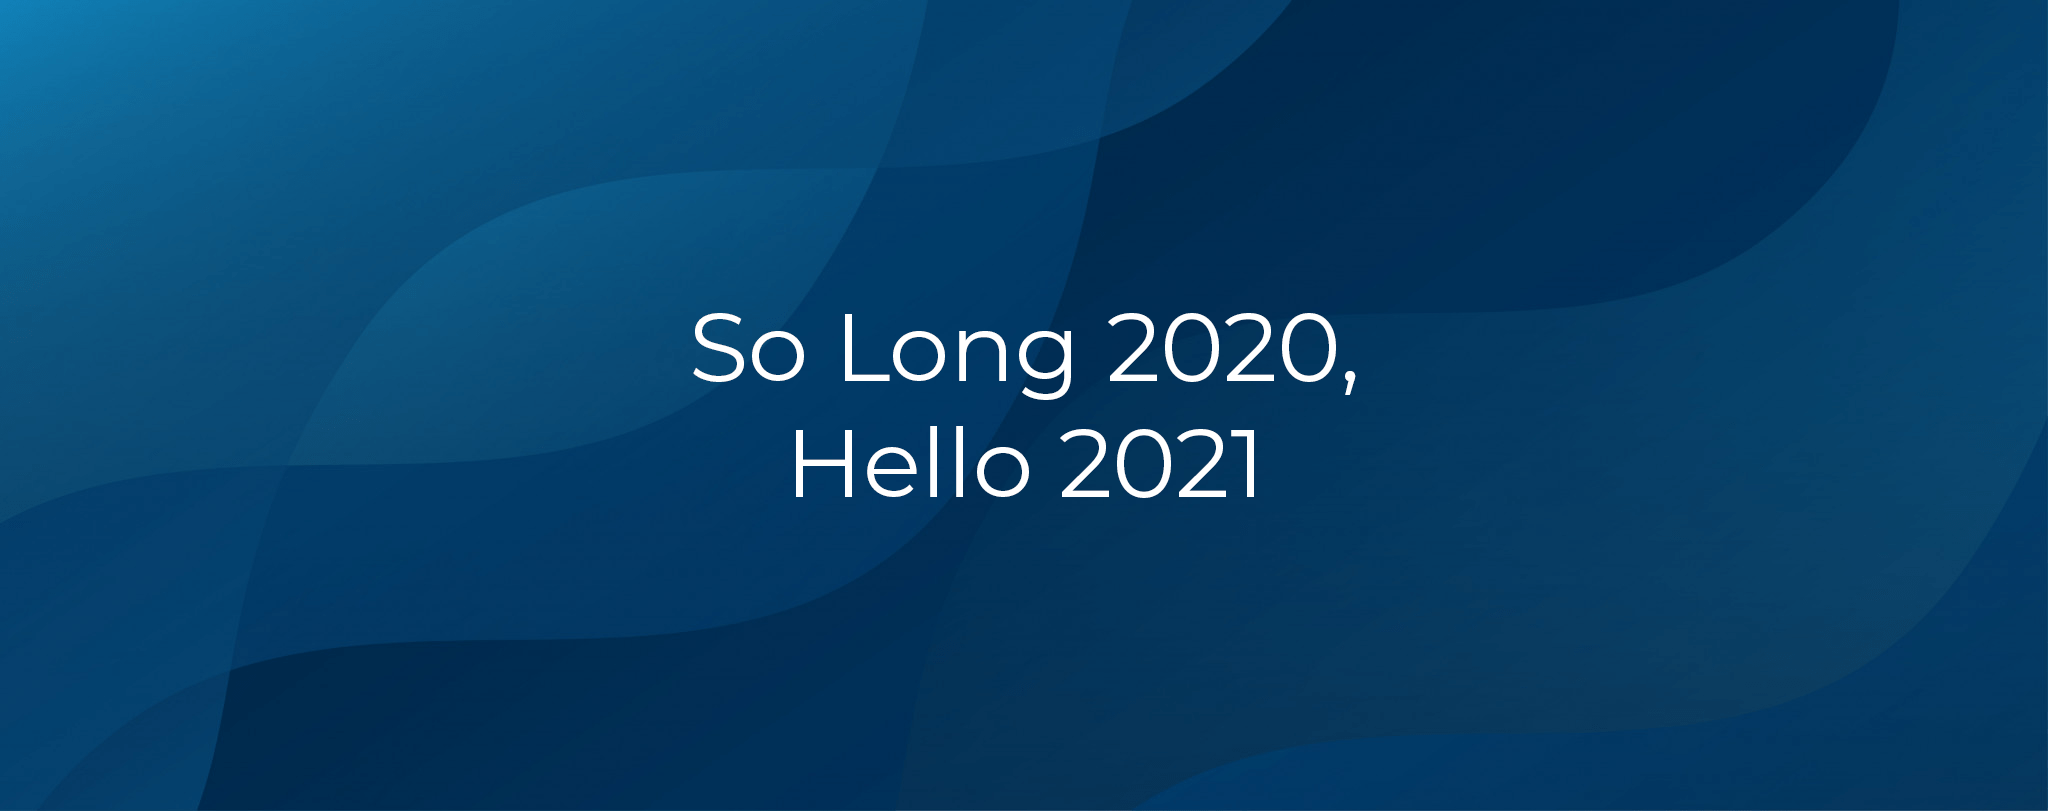 So Long 2020 Hello 2021